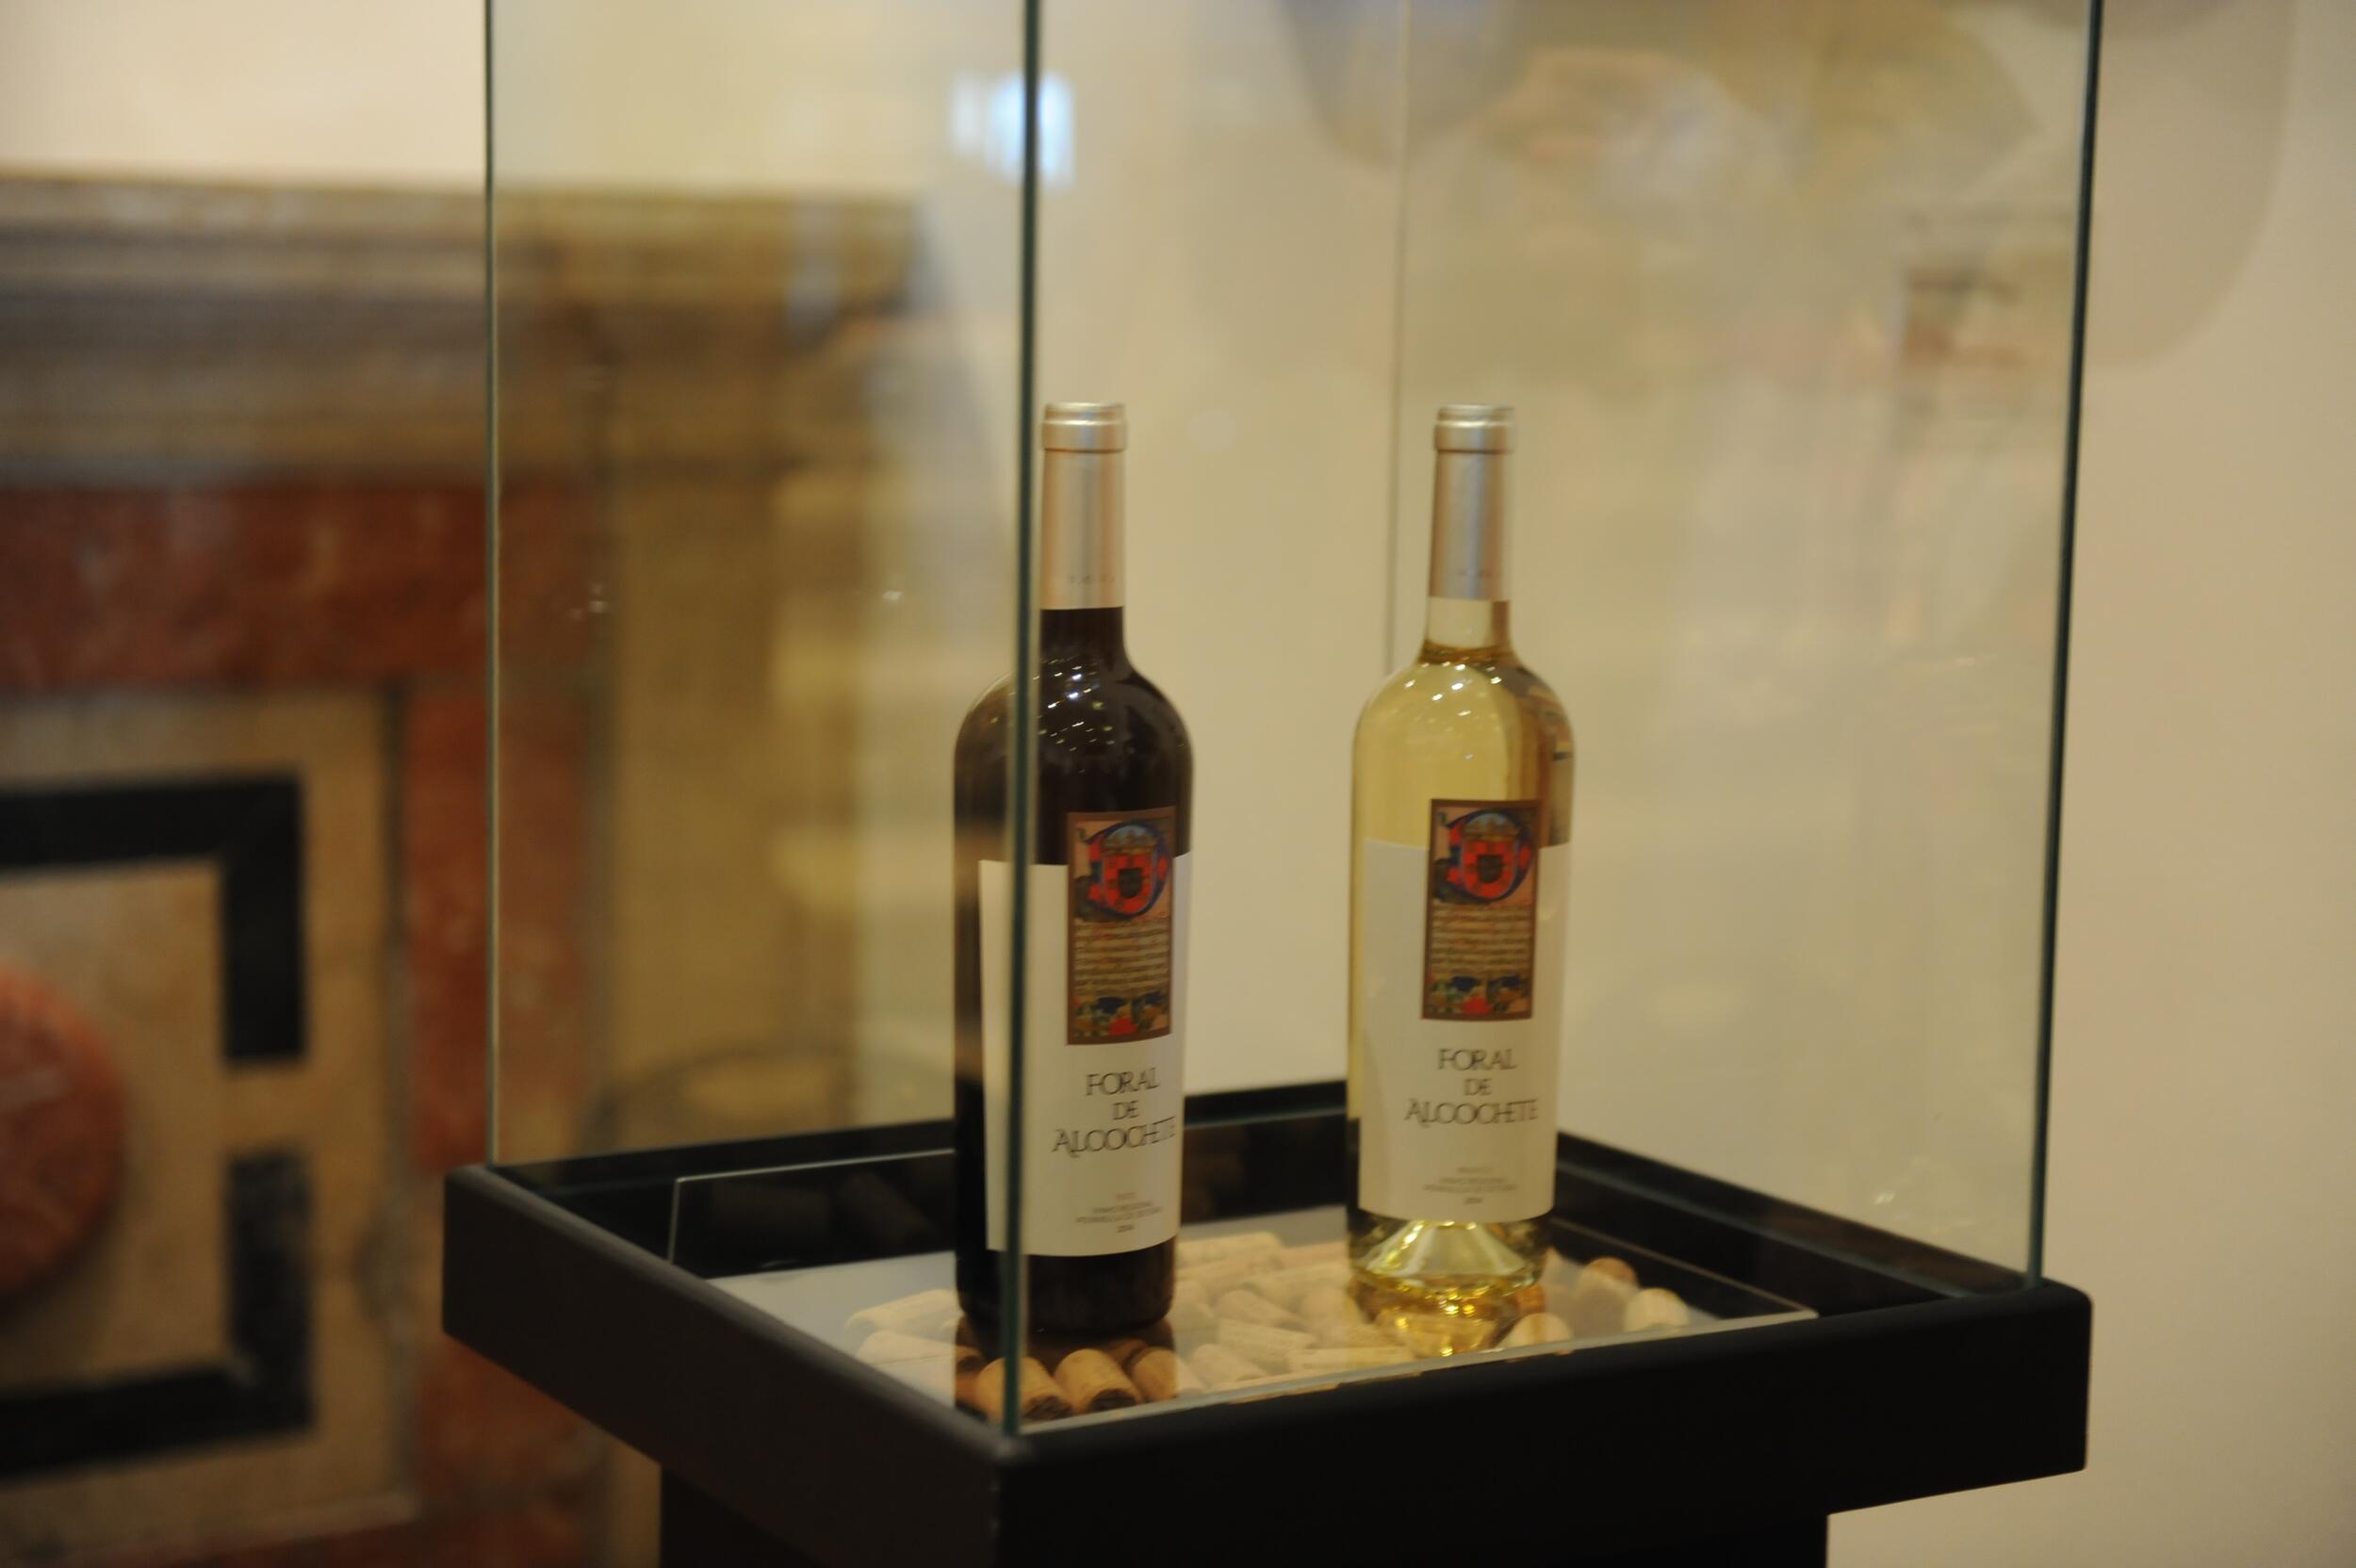 Rio Frio apresenta marca de vinho “Foral de Alcochete”